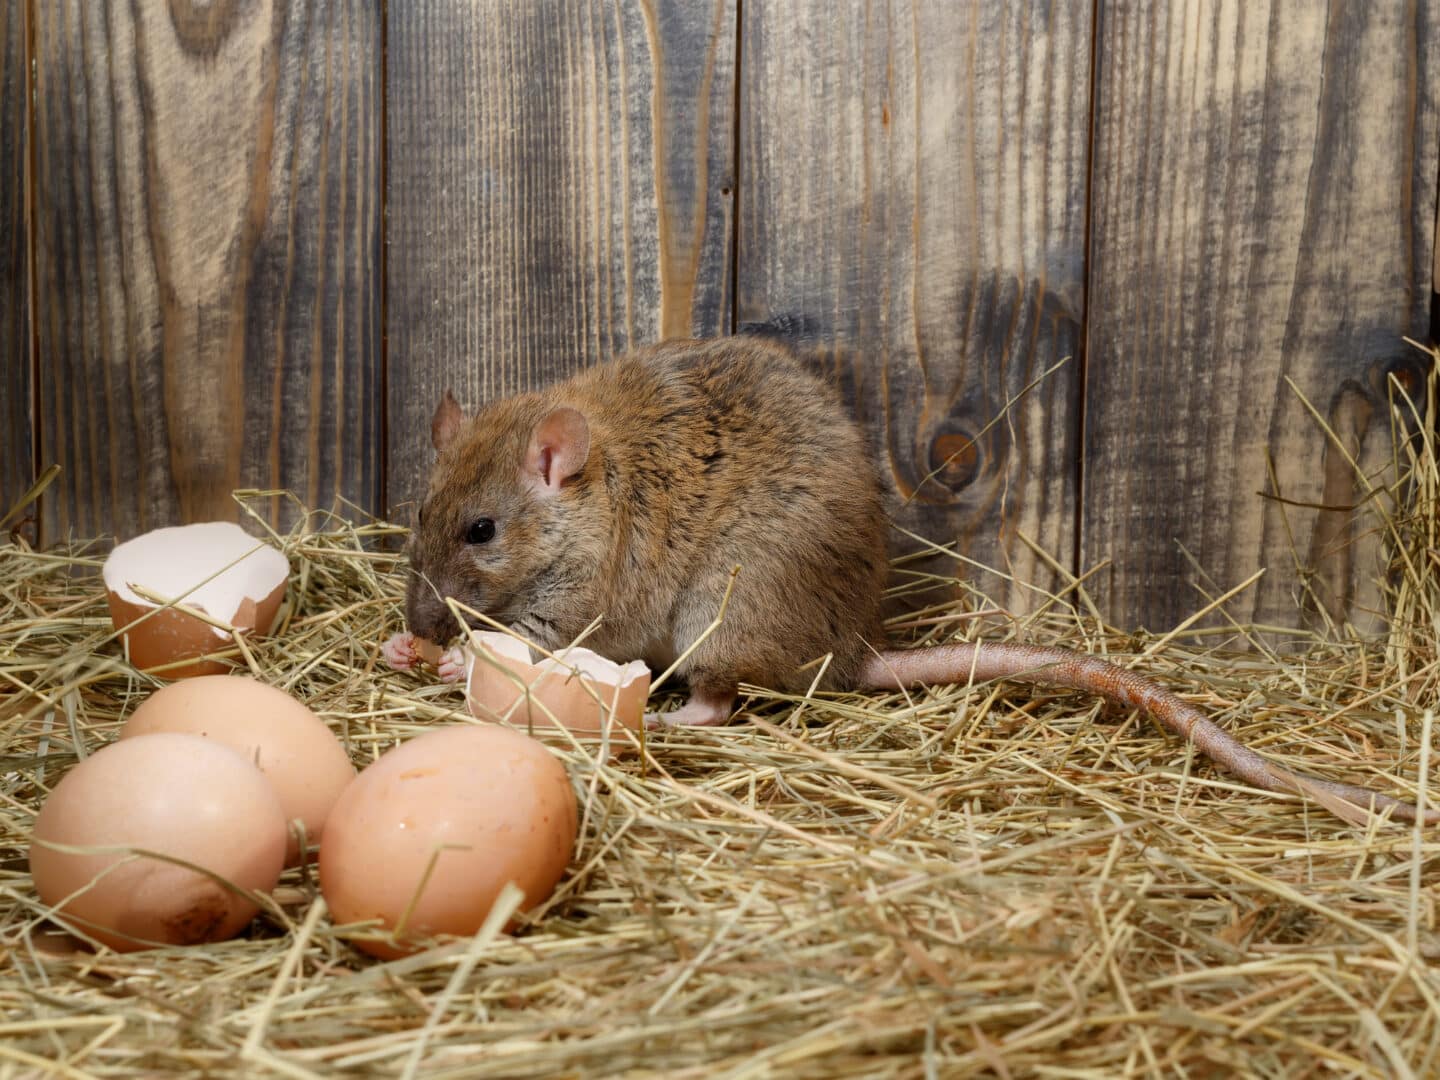 rat eating eggs in chicken coop